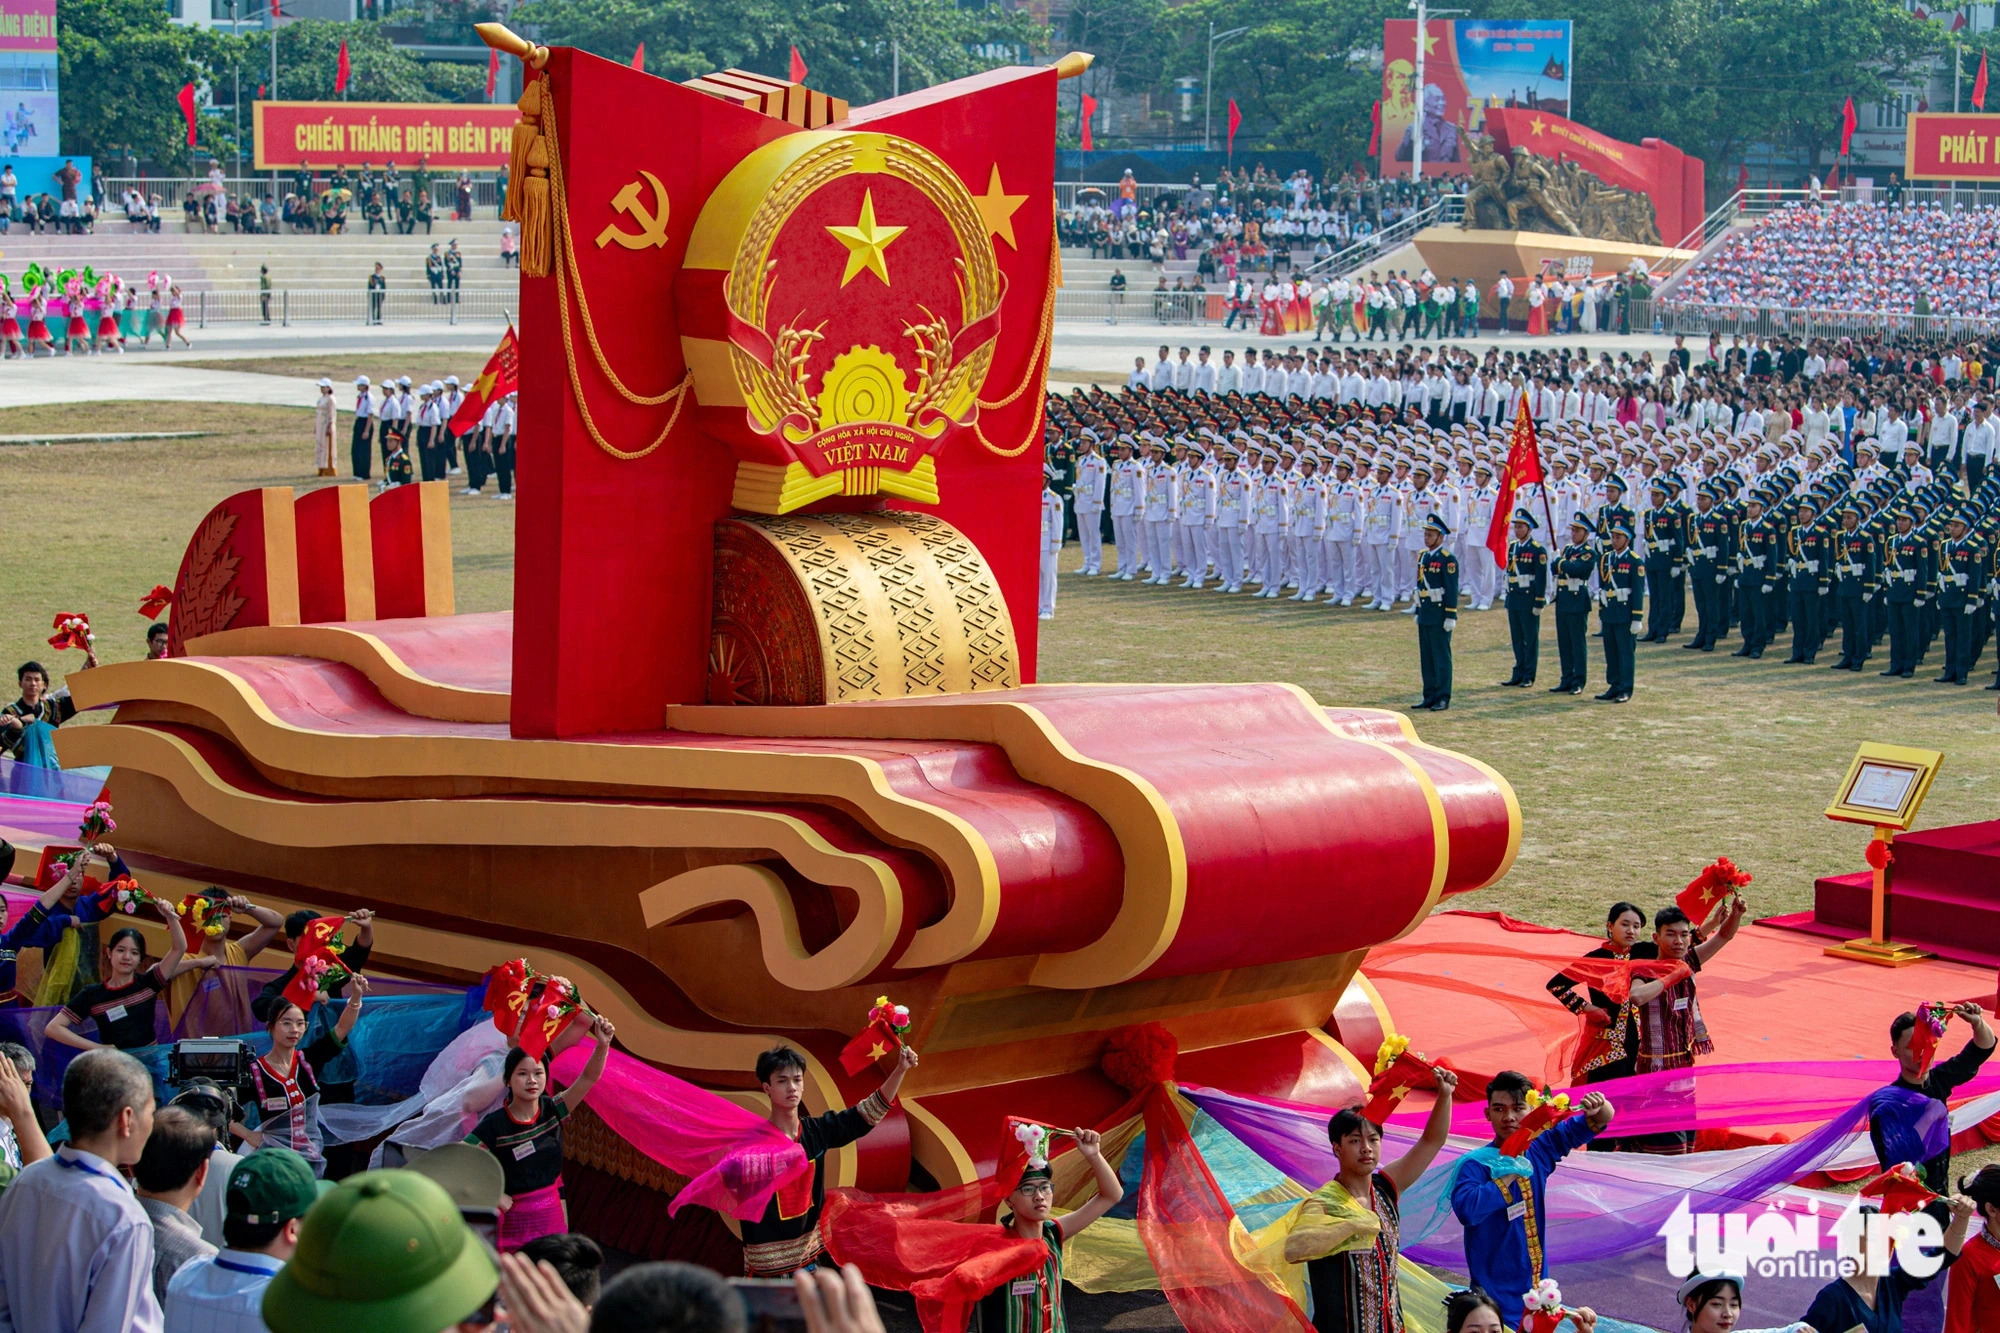 Dien Bien Phu Victory military parade rehearsal held in northwestern Vietnam